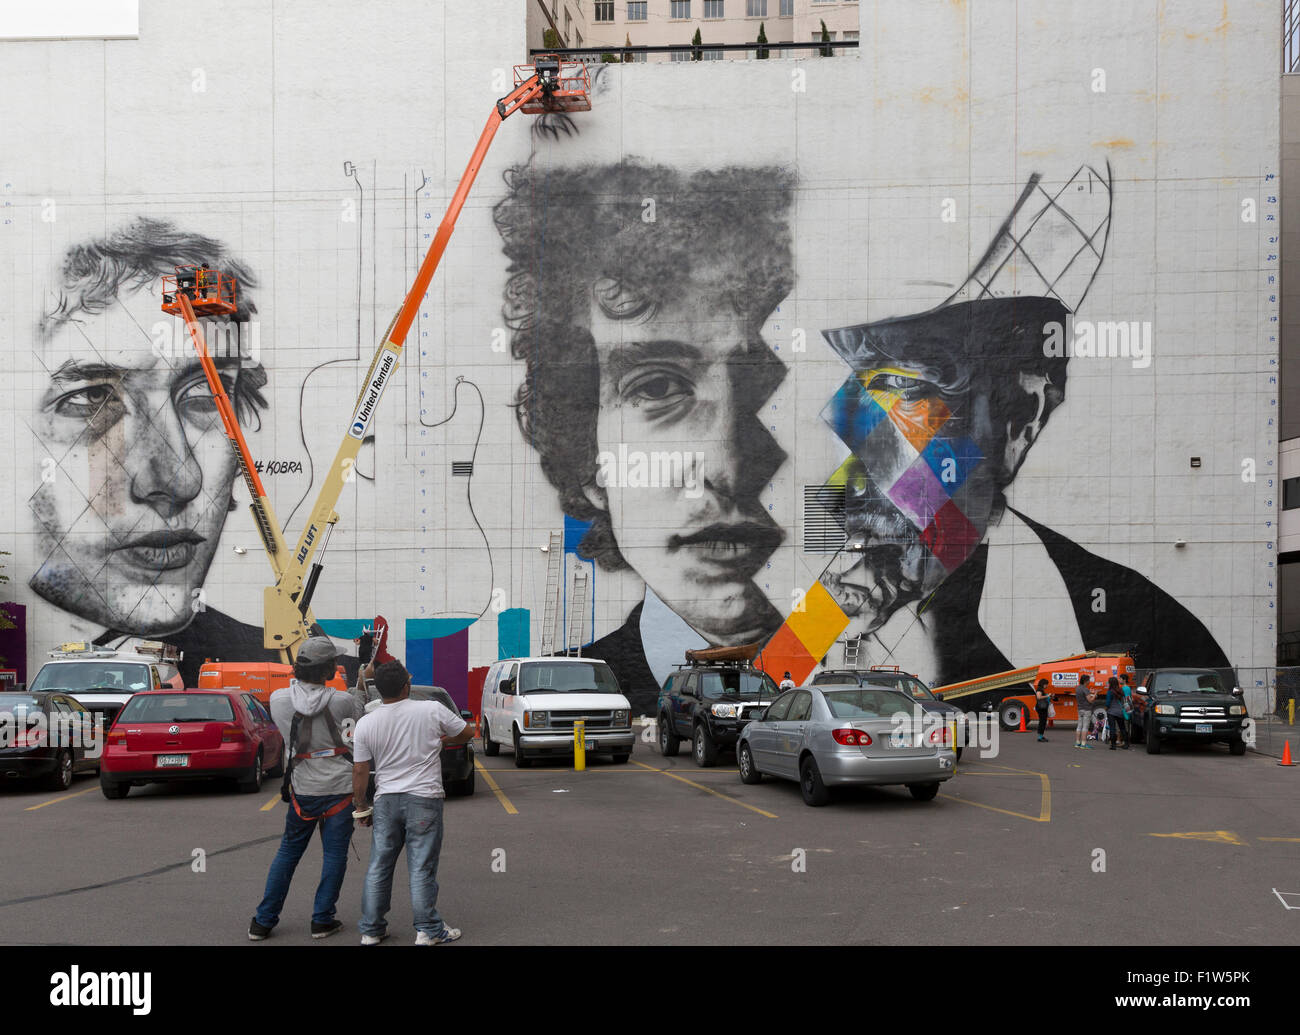 L'artiste brésilien Eduardo Kobra et son équipe de cinq artistes travaillant sur les ascenseurs peinture une peinture murale de Bob Dylan Minneapolis, MN Banque D'Images